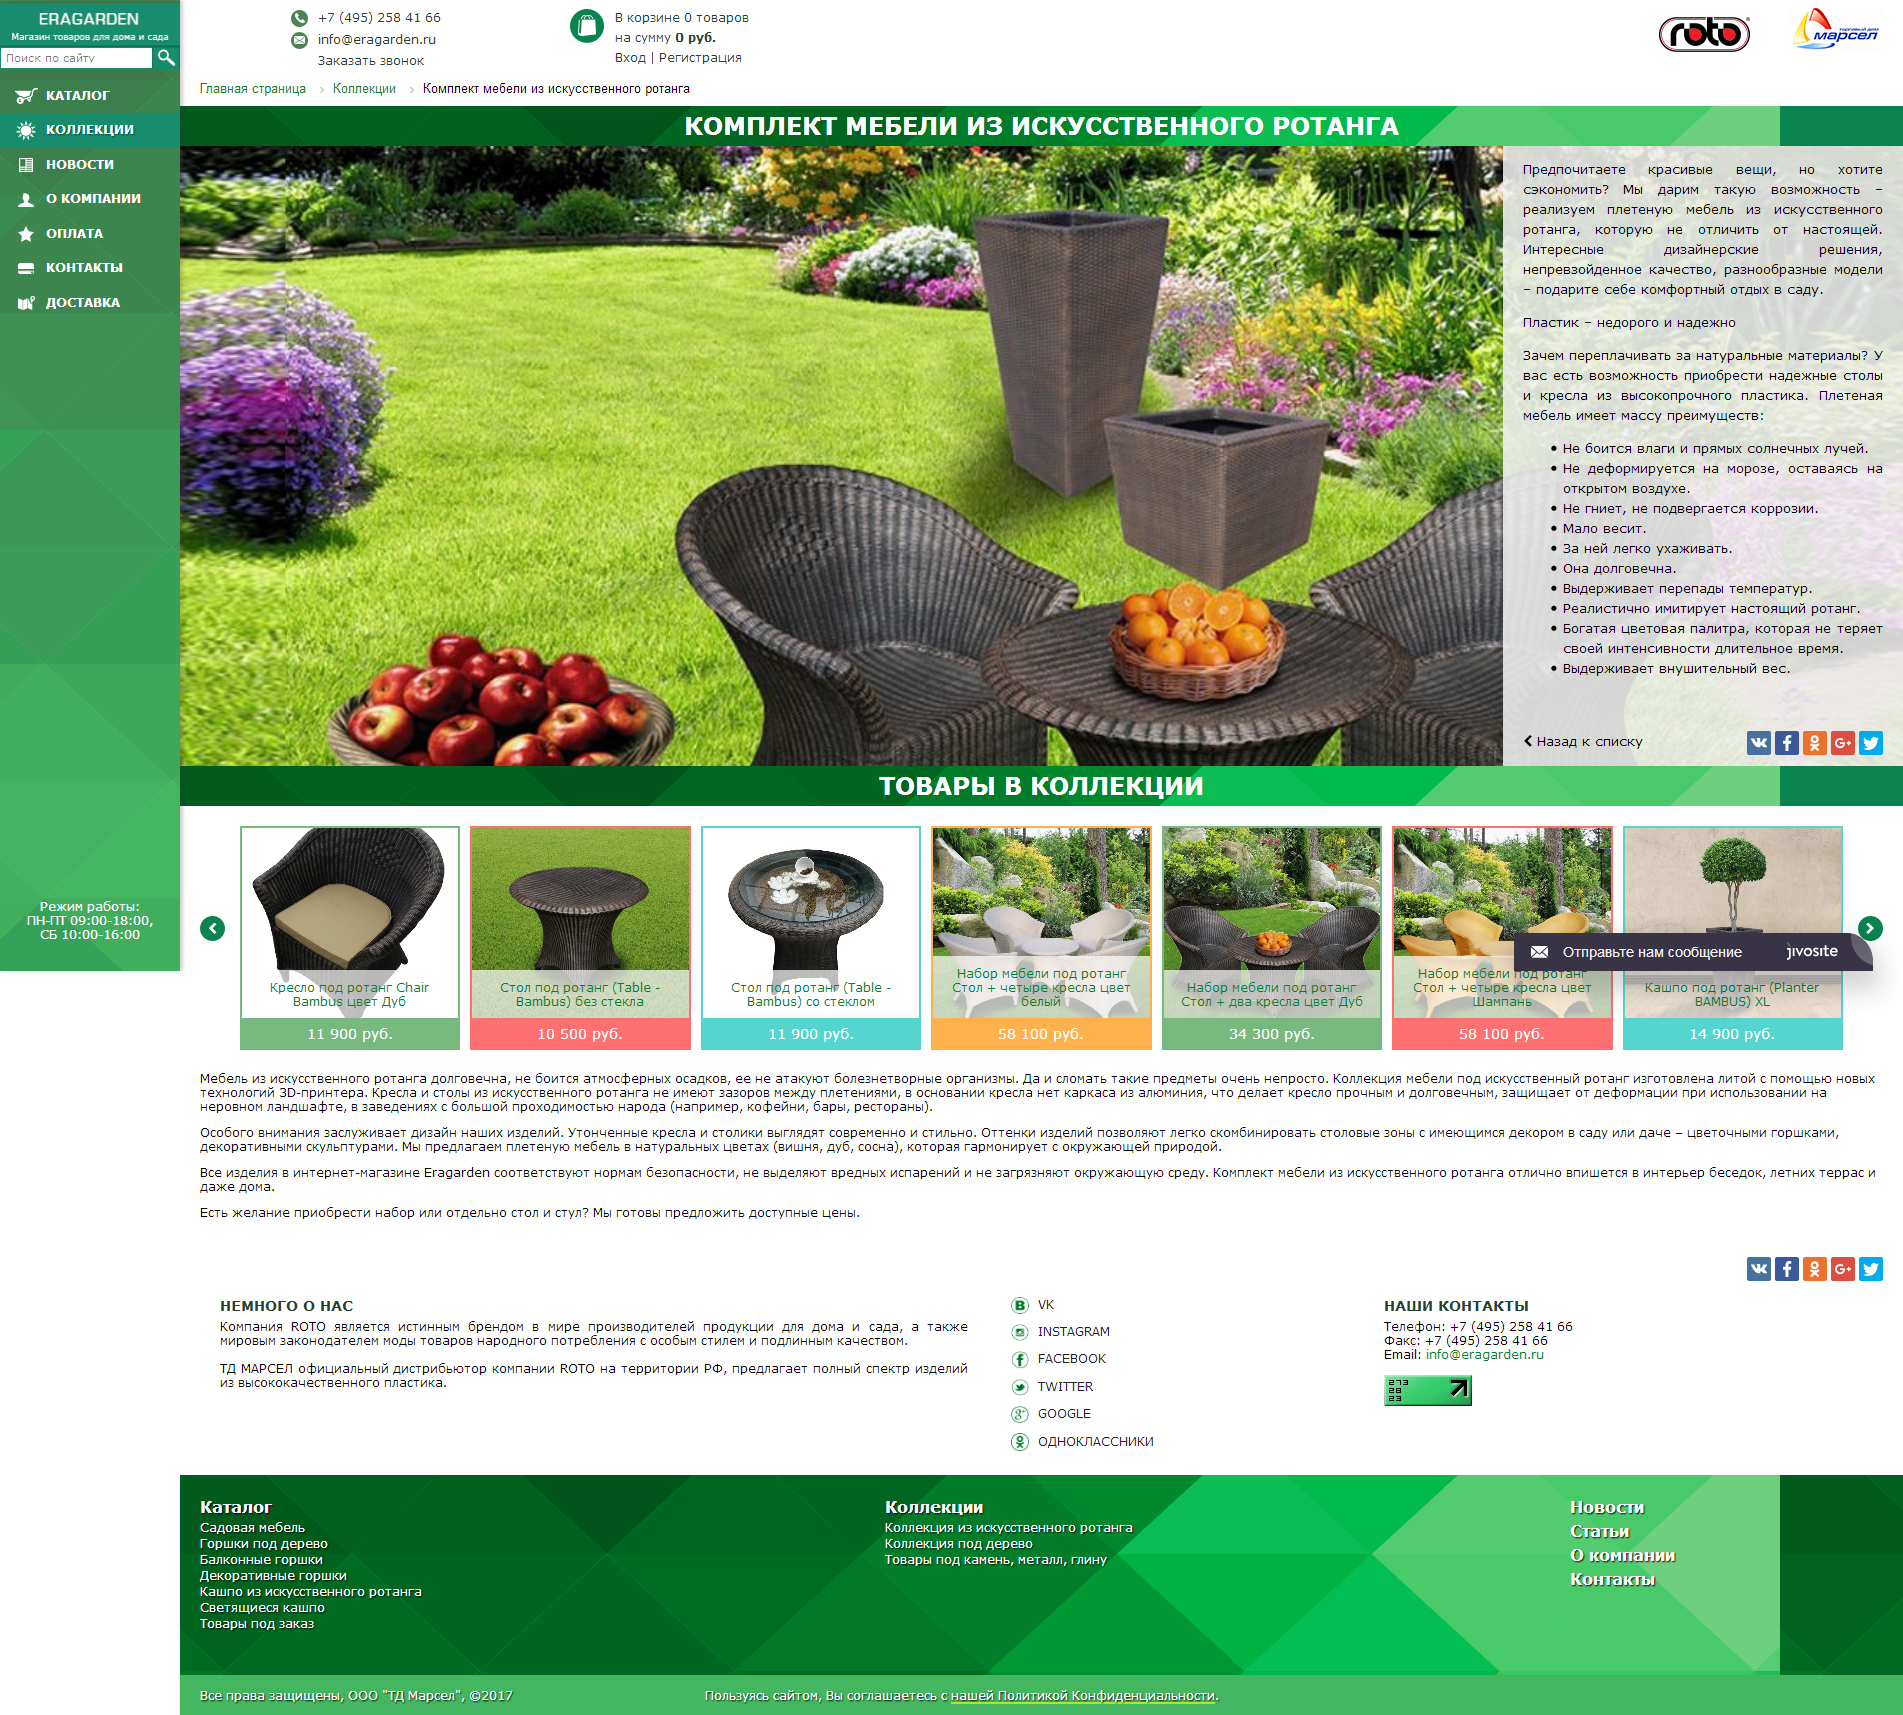 eragarden.ru - интернет-магазин садовой мебели